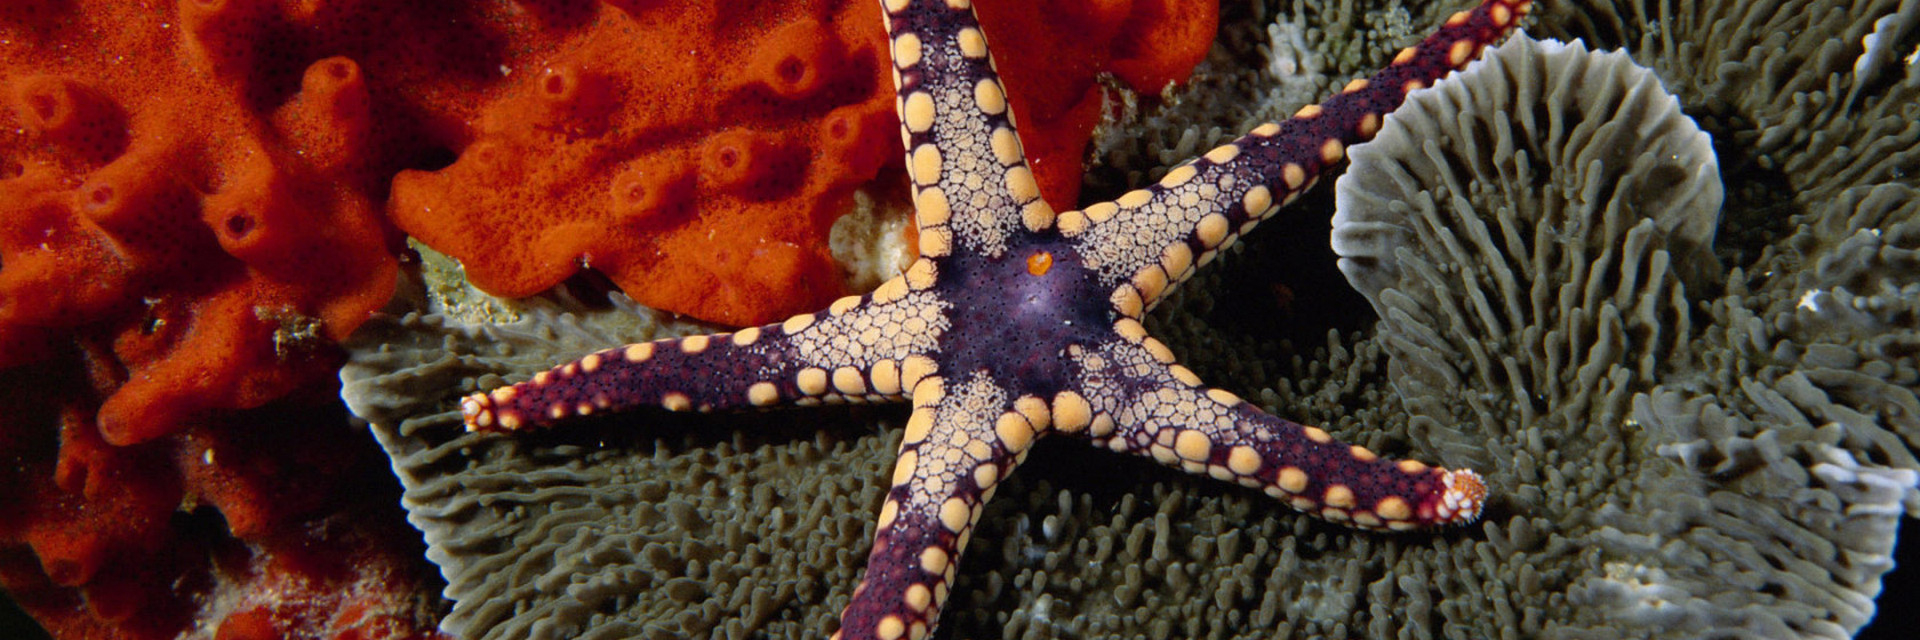 Морские звезды в каких морях. Морская звезда. Огромная морская звезда. Королевская морская звезда. Синяя морская звезда.